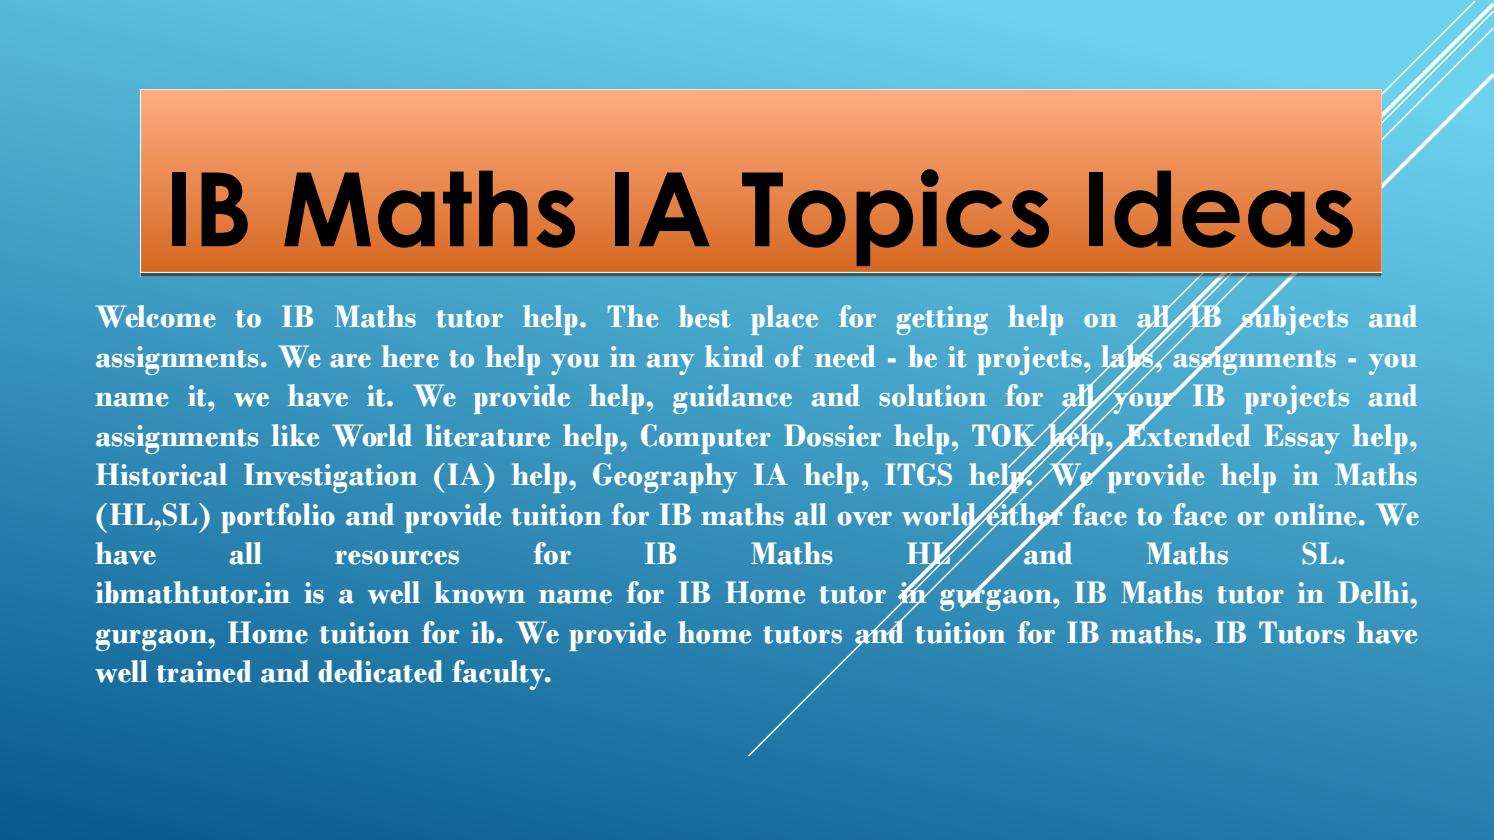 IB Math IA Topics - Tips and Ideas